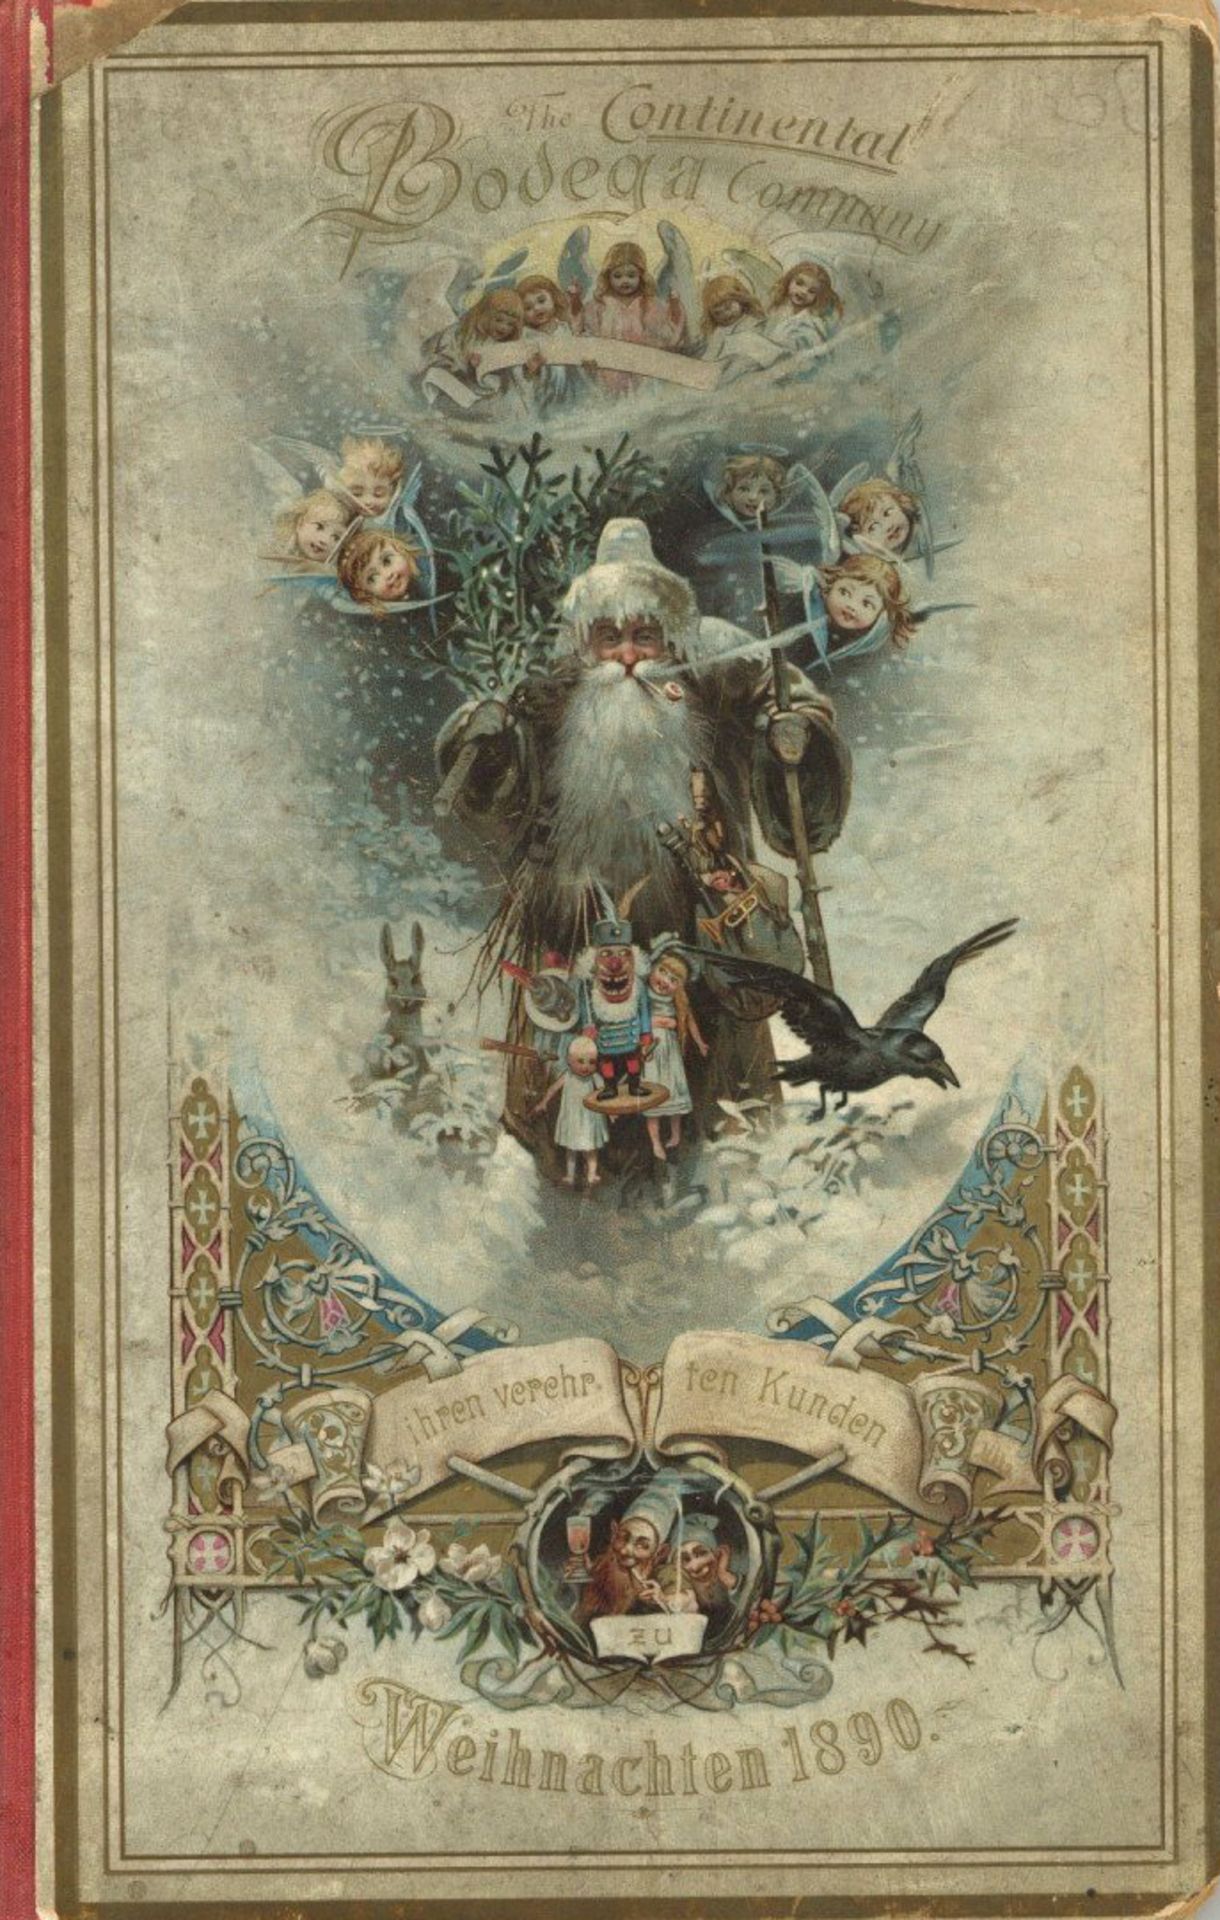 Wein Buch der Continental Bodega Company an die verehrten Kunden zu Weihnachten 1890, 20 S. mit